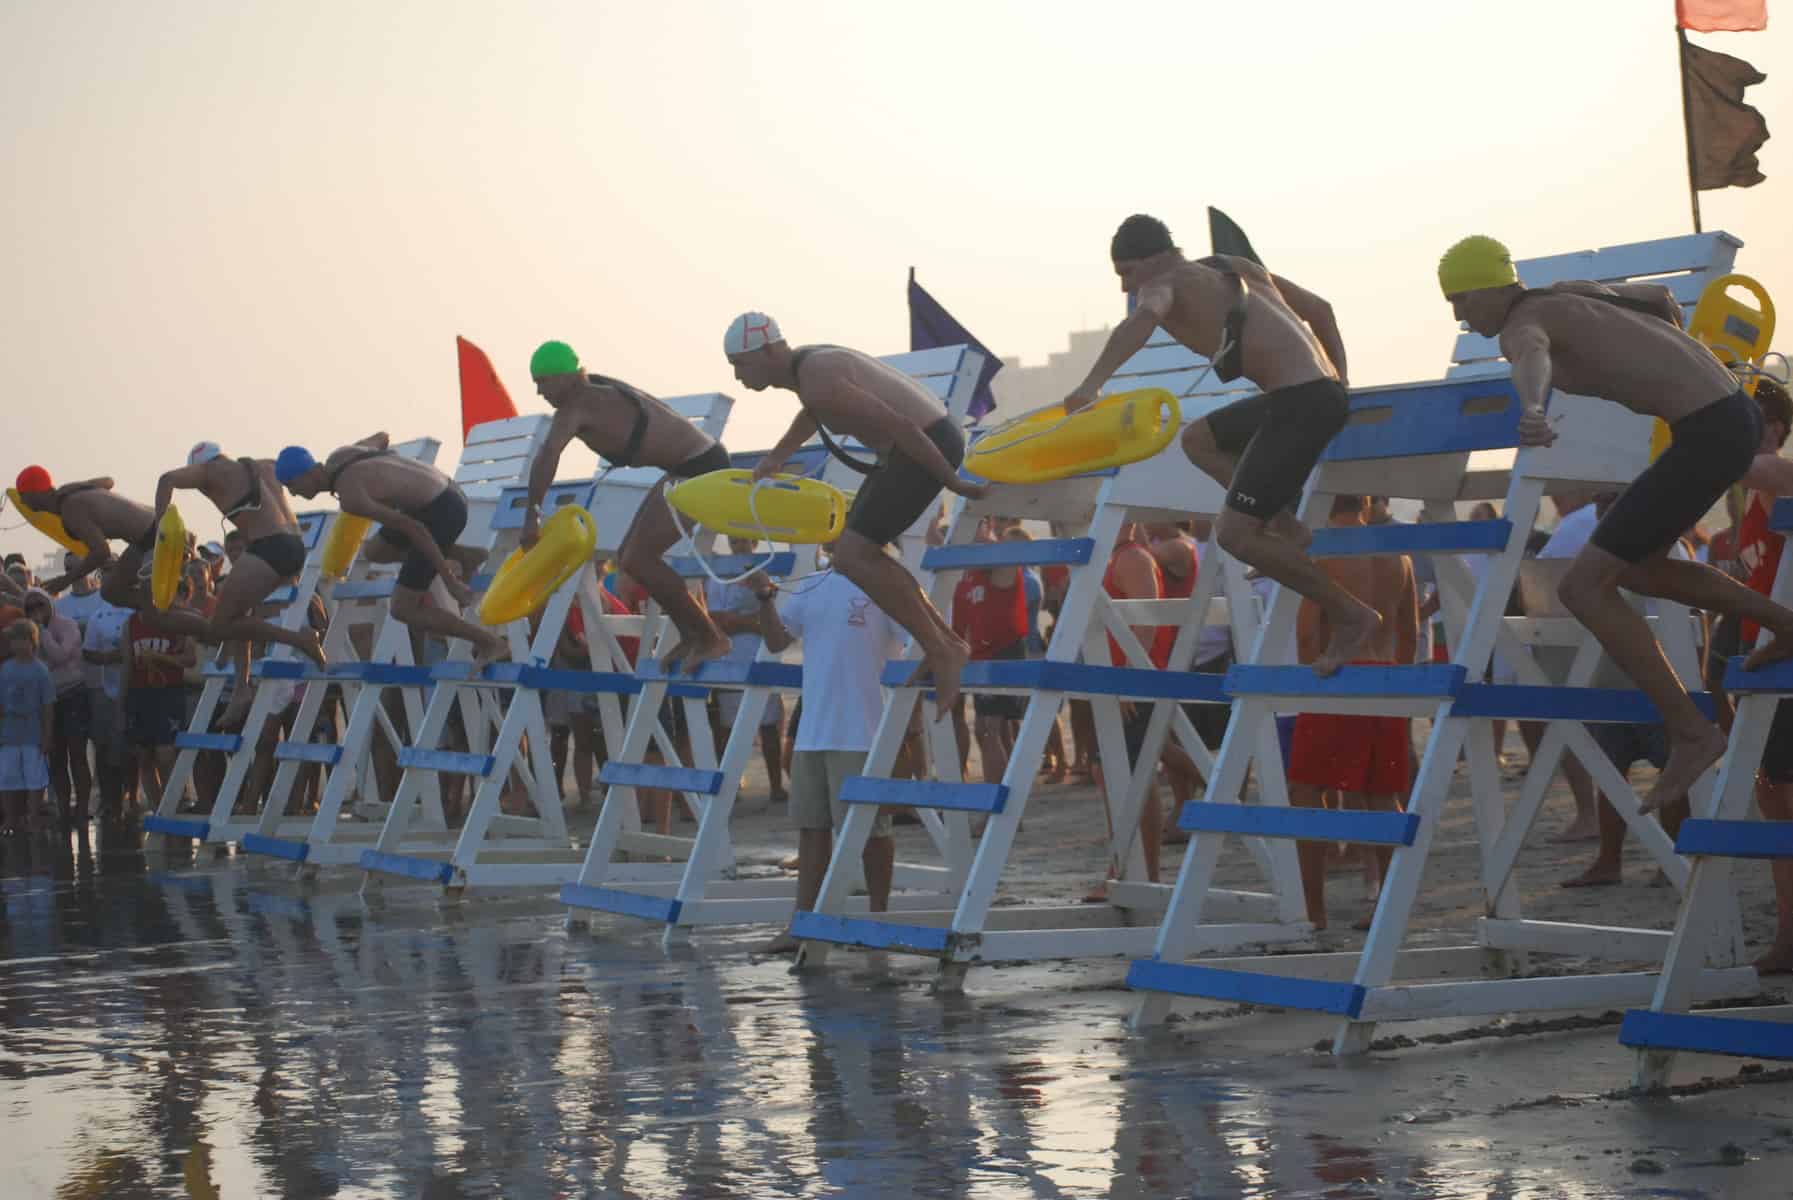 Beschen-Callahan Memorial Lifeguard Race 2015